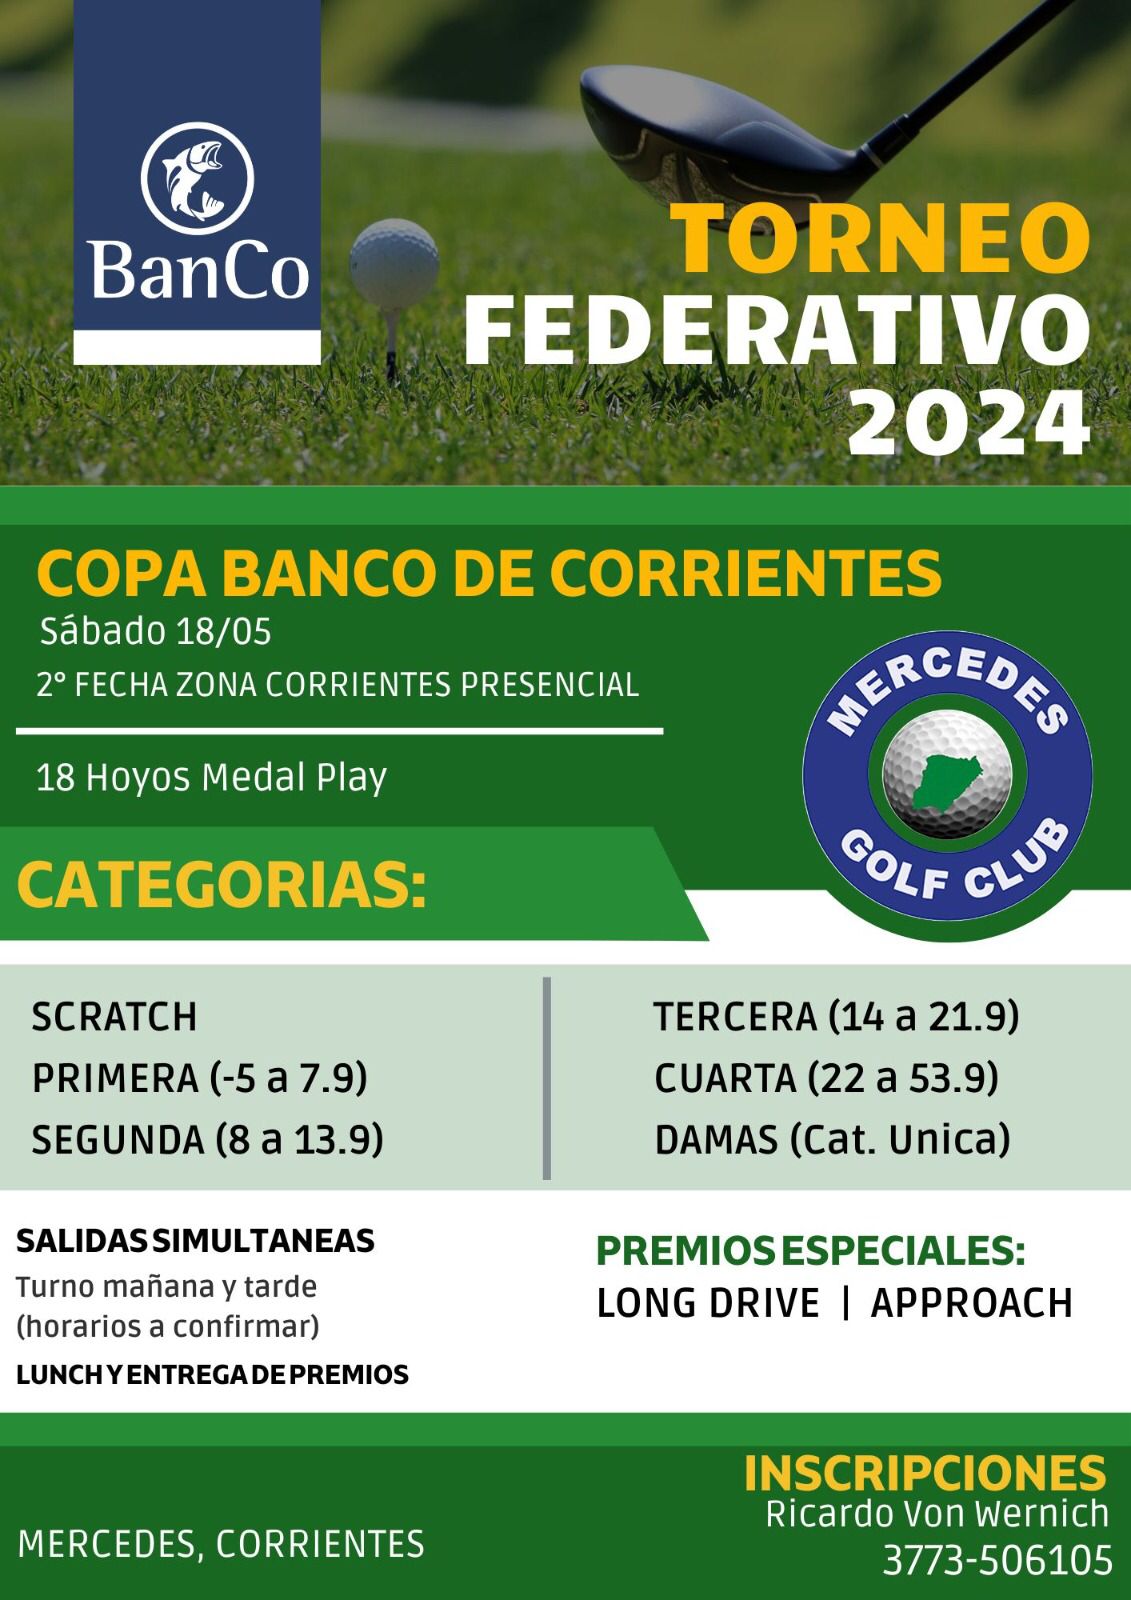 FEDERATIVO MERCEDES 2024 - COPA BANCO DE CORRIENTES